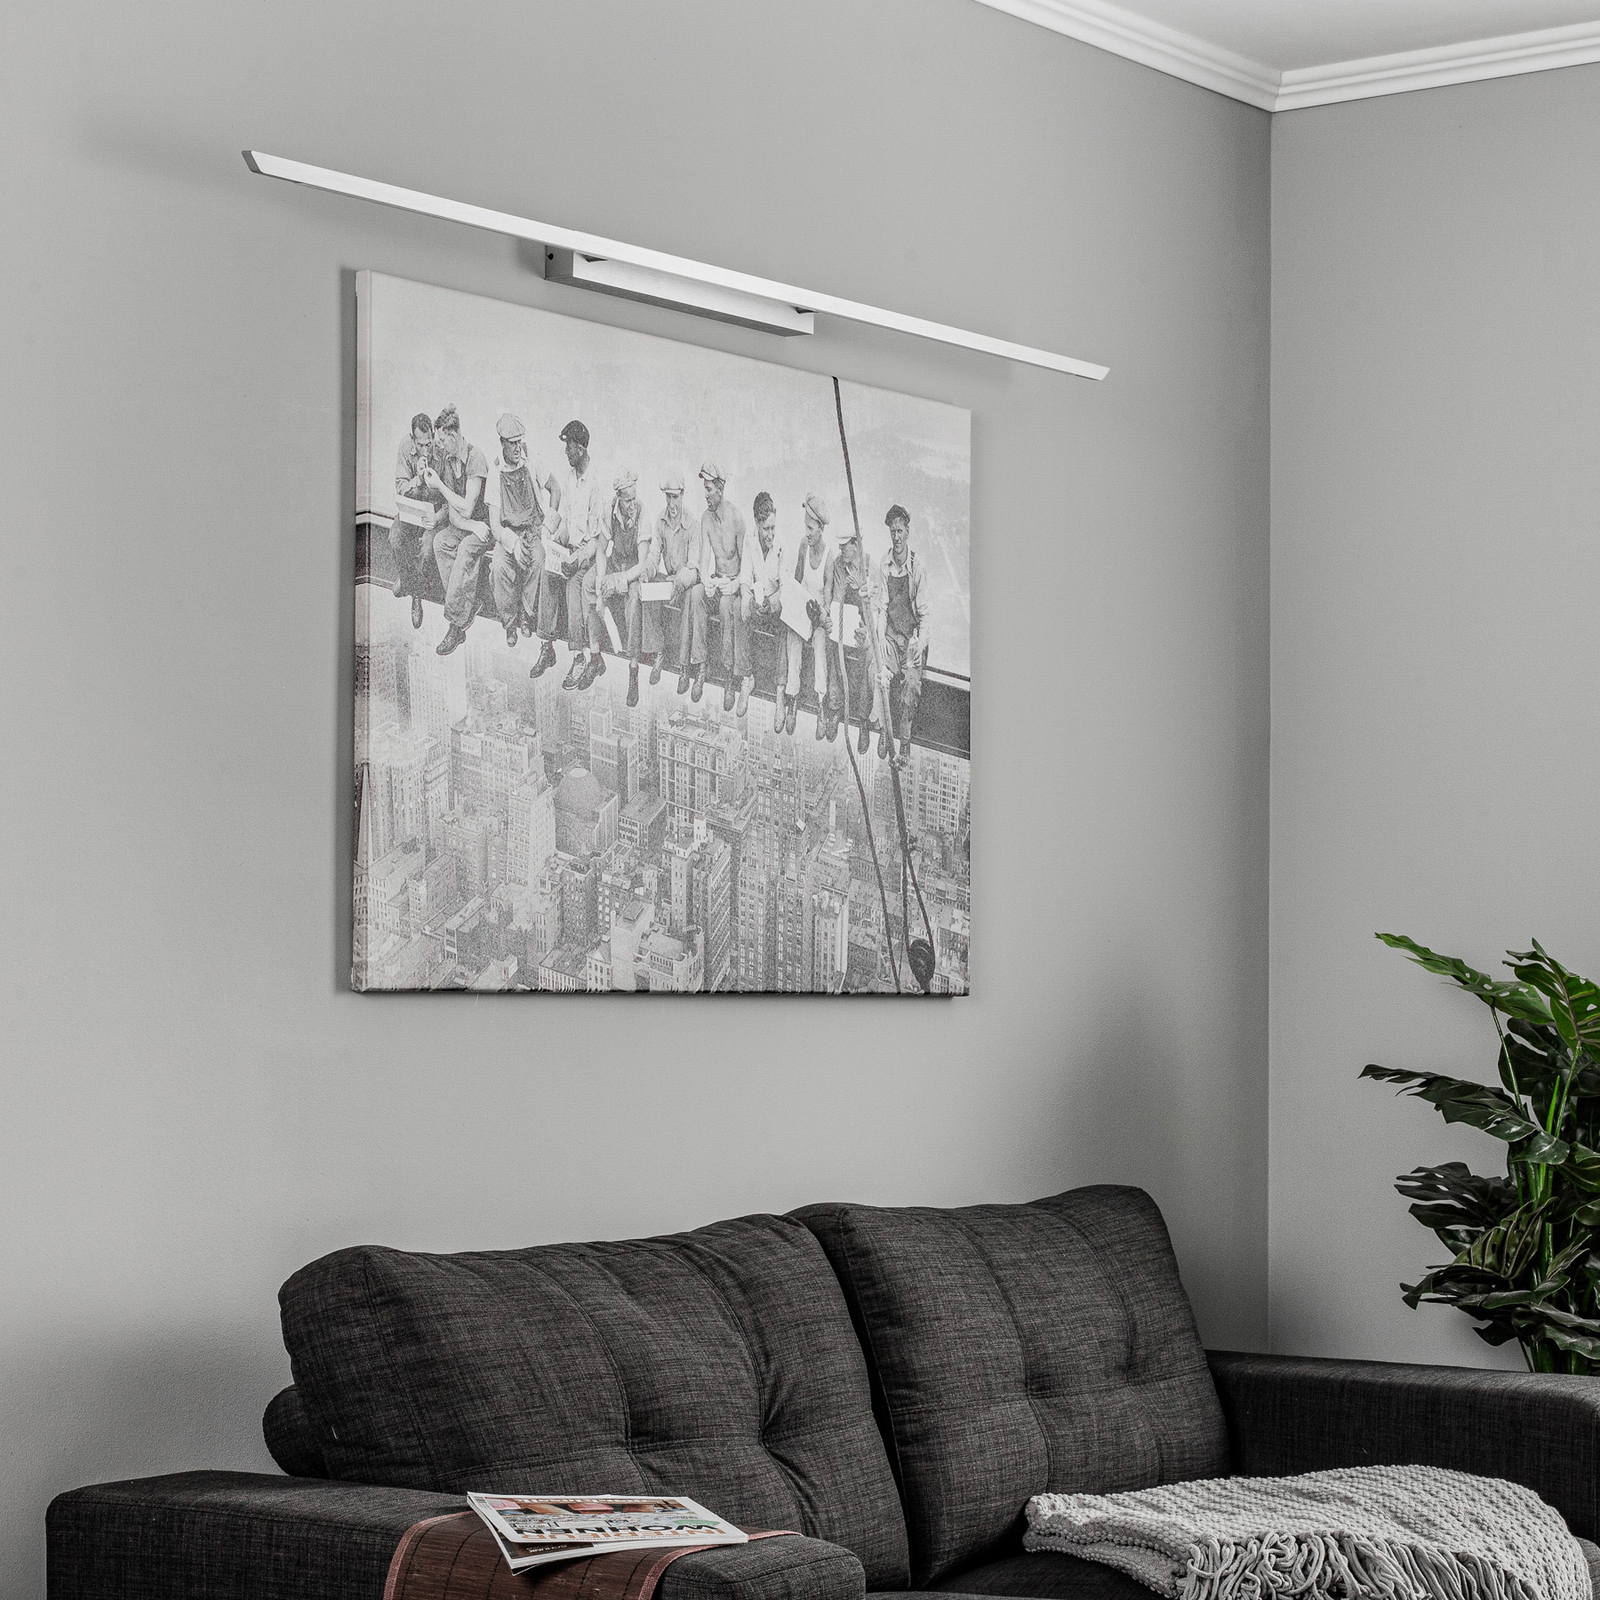 Quitani Niara LED svjetiljka za slike CCT aluminij eloksiran prirodni